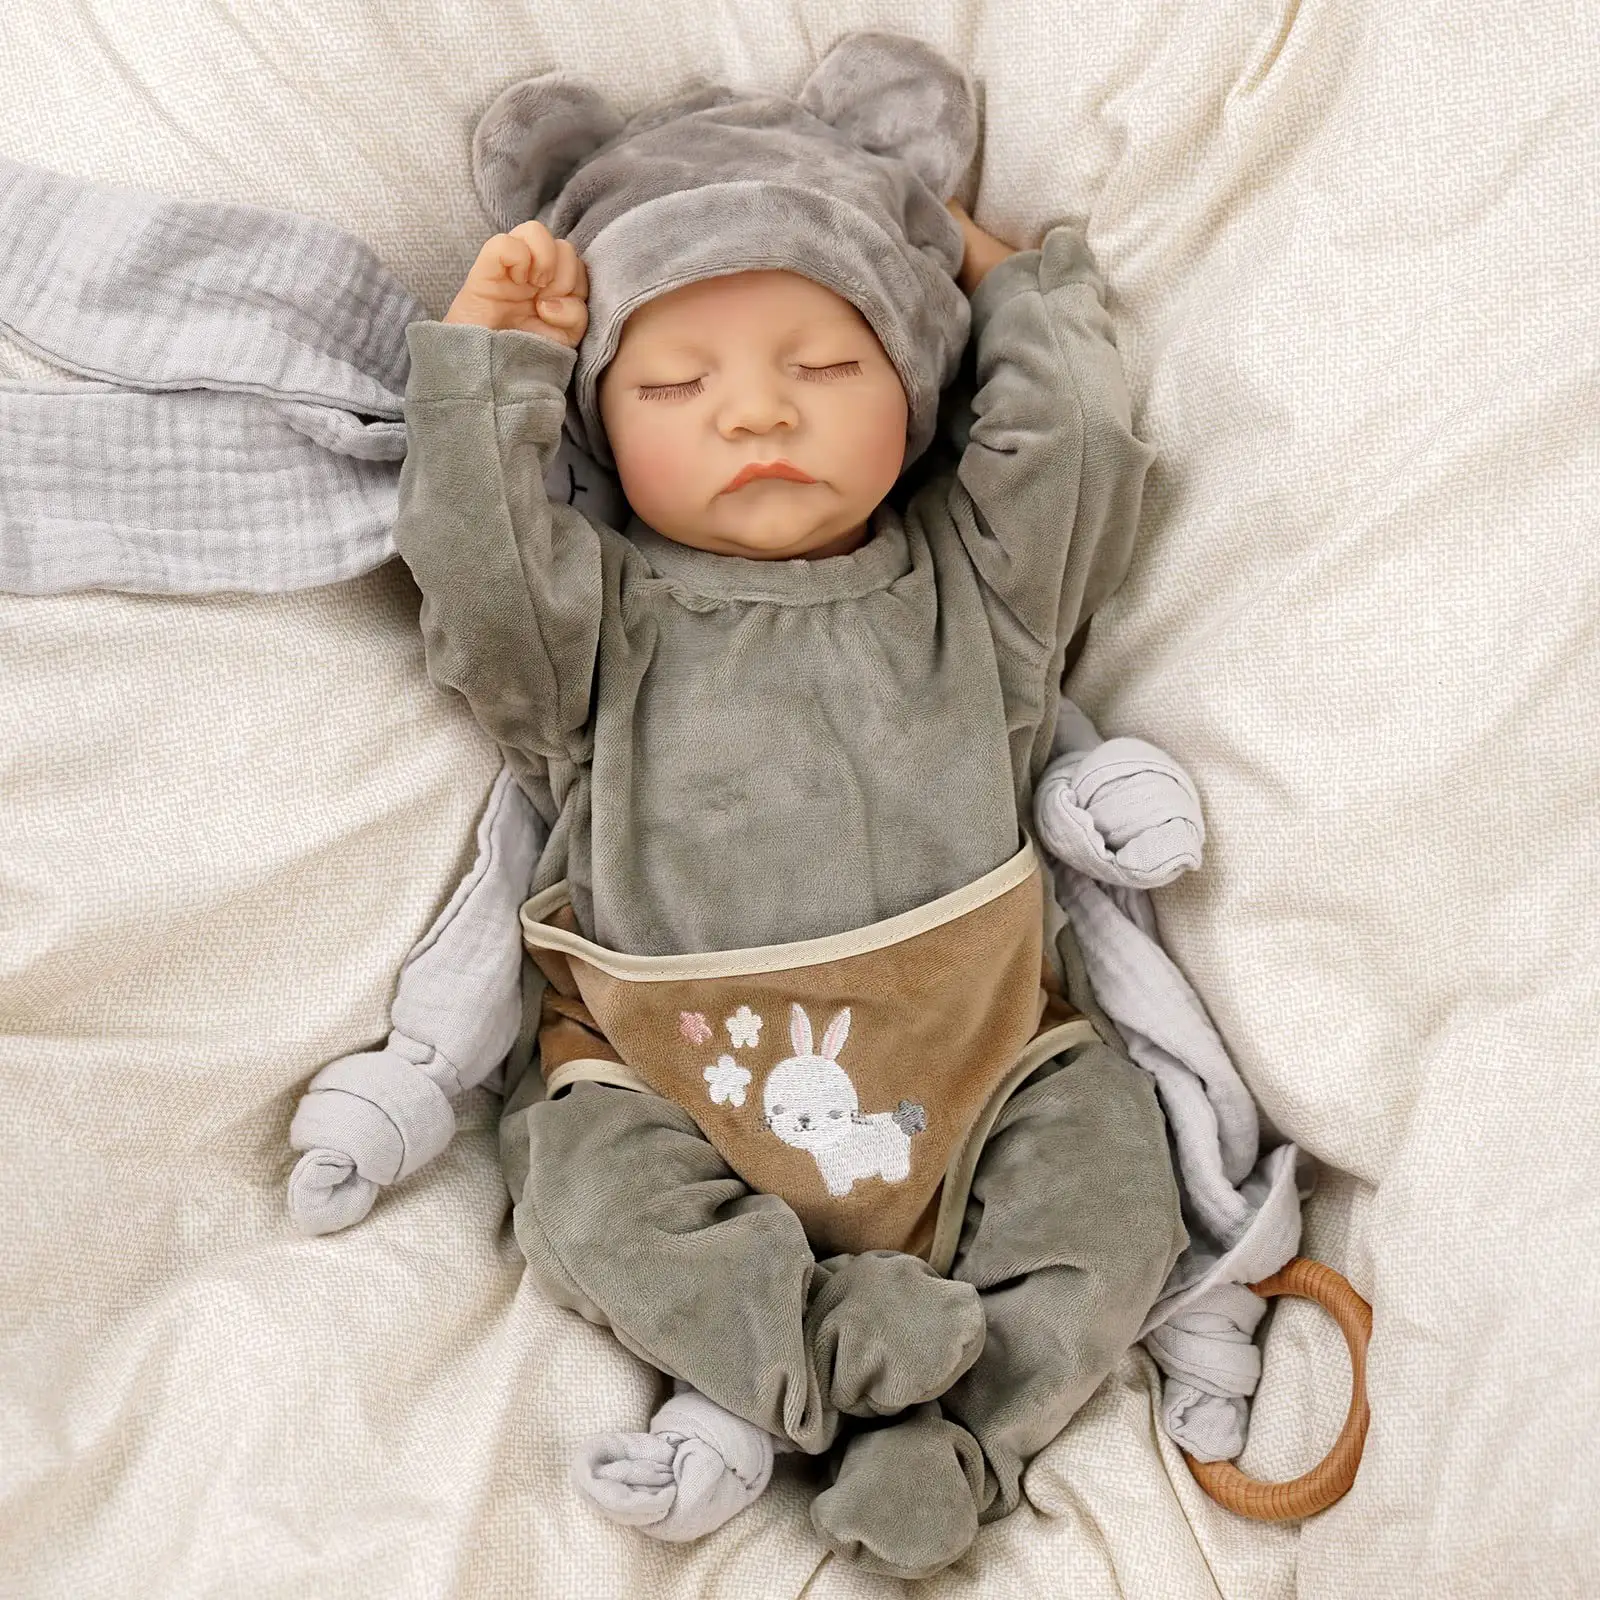 17inch Reborn Baby Doll Full Silicone Body Lifelike Sleeping Boy Reborn Doll Gift Toys